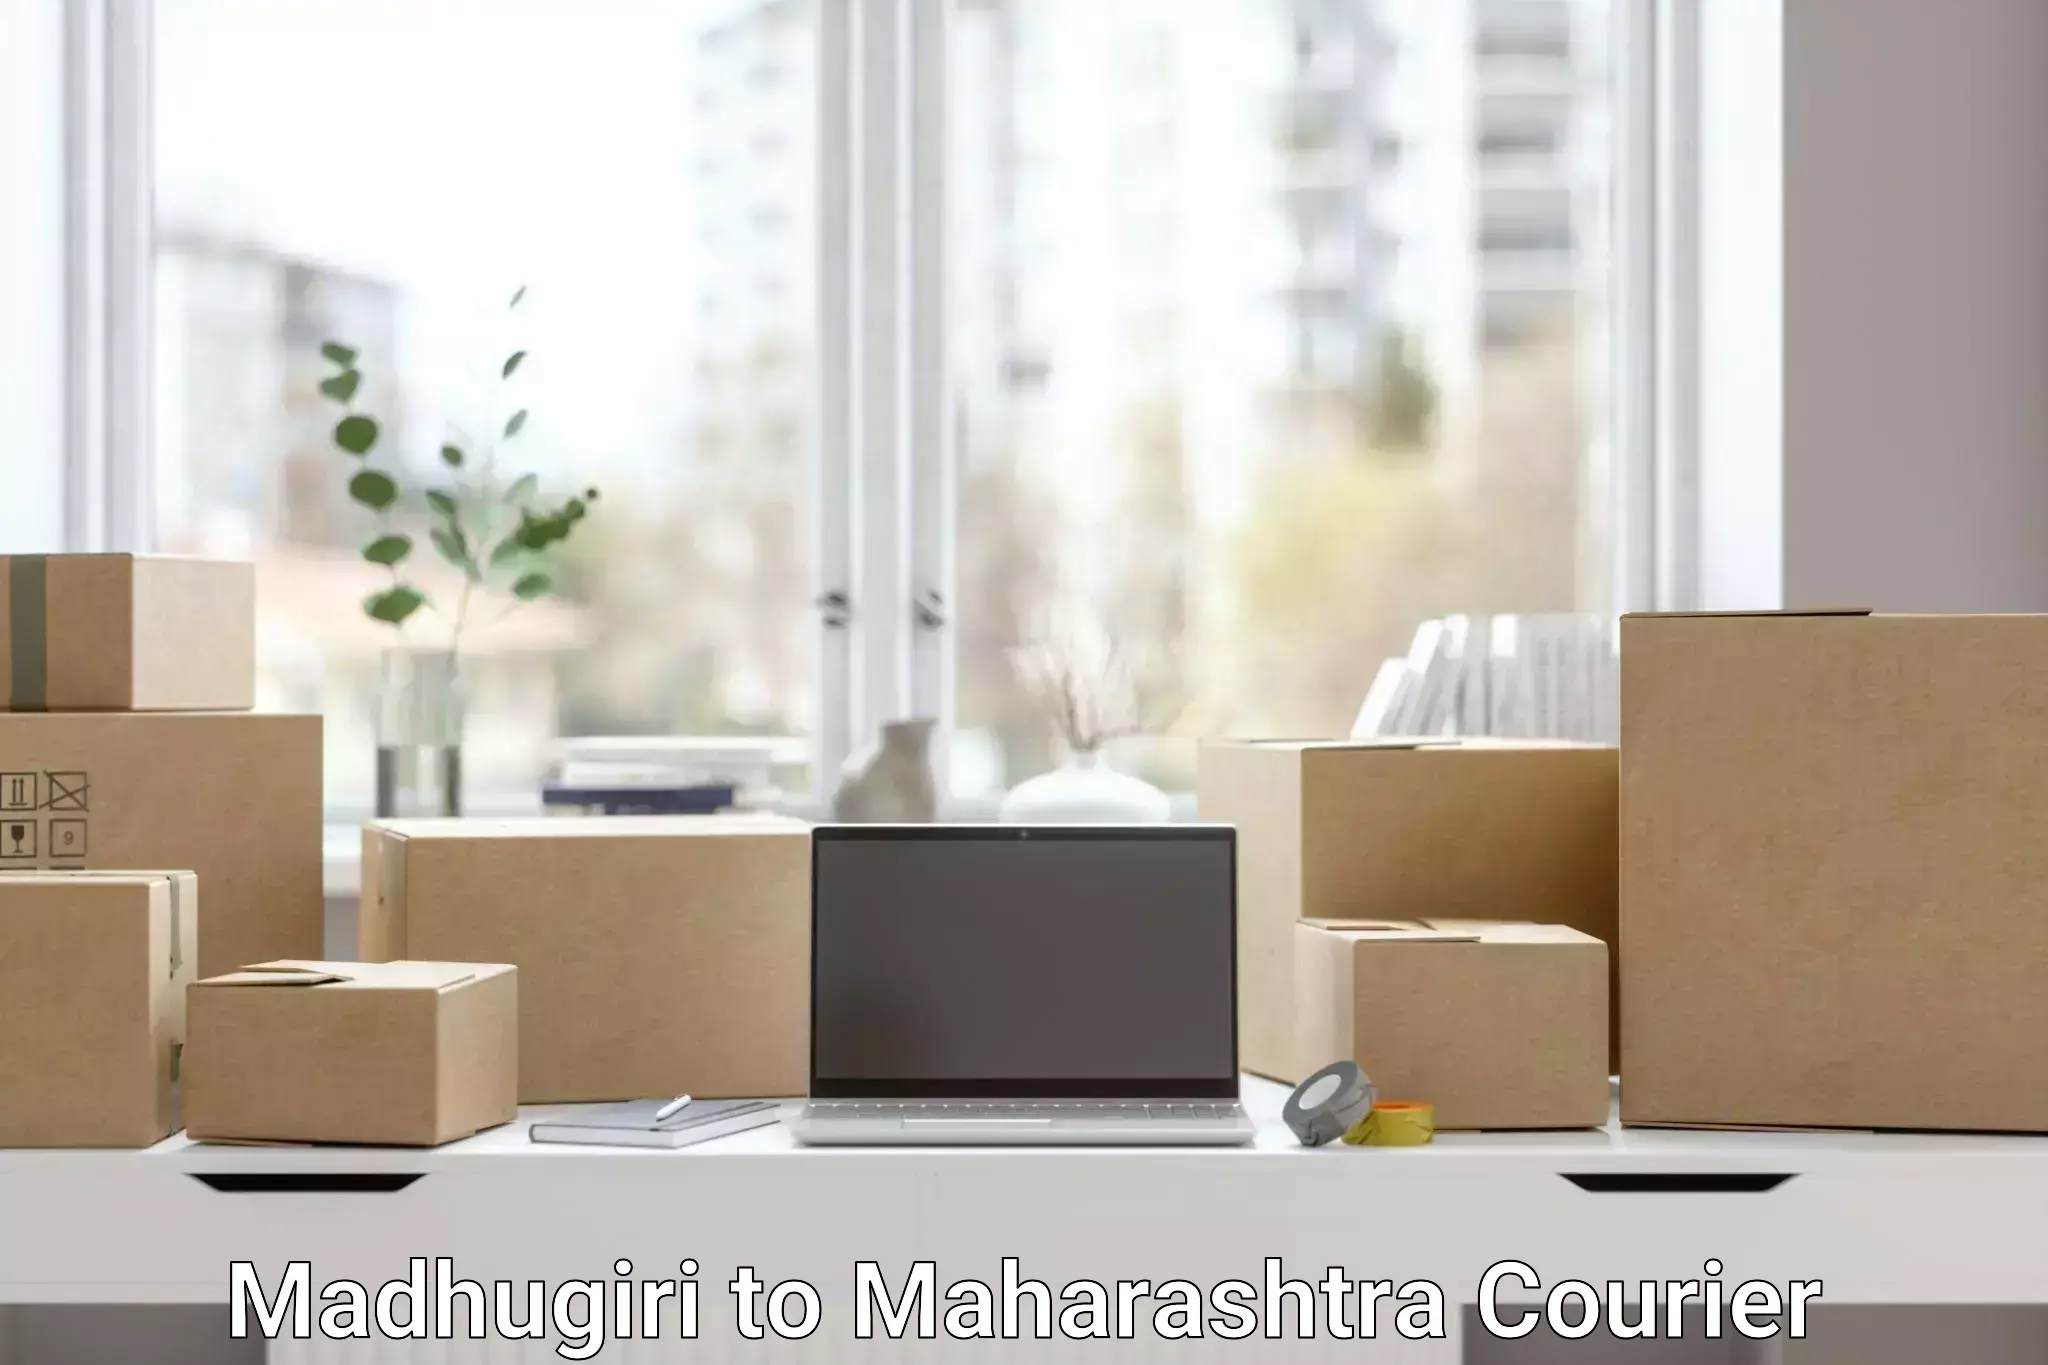 Cargo courier service Madhugiri to Tata Institute of Social Sciences Mumbai